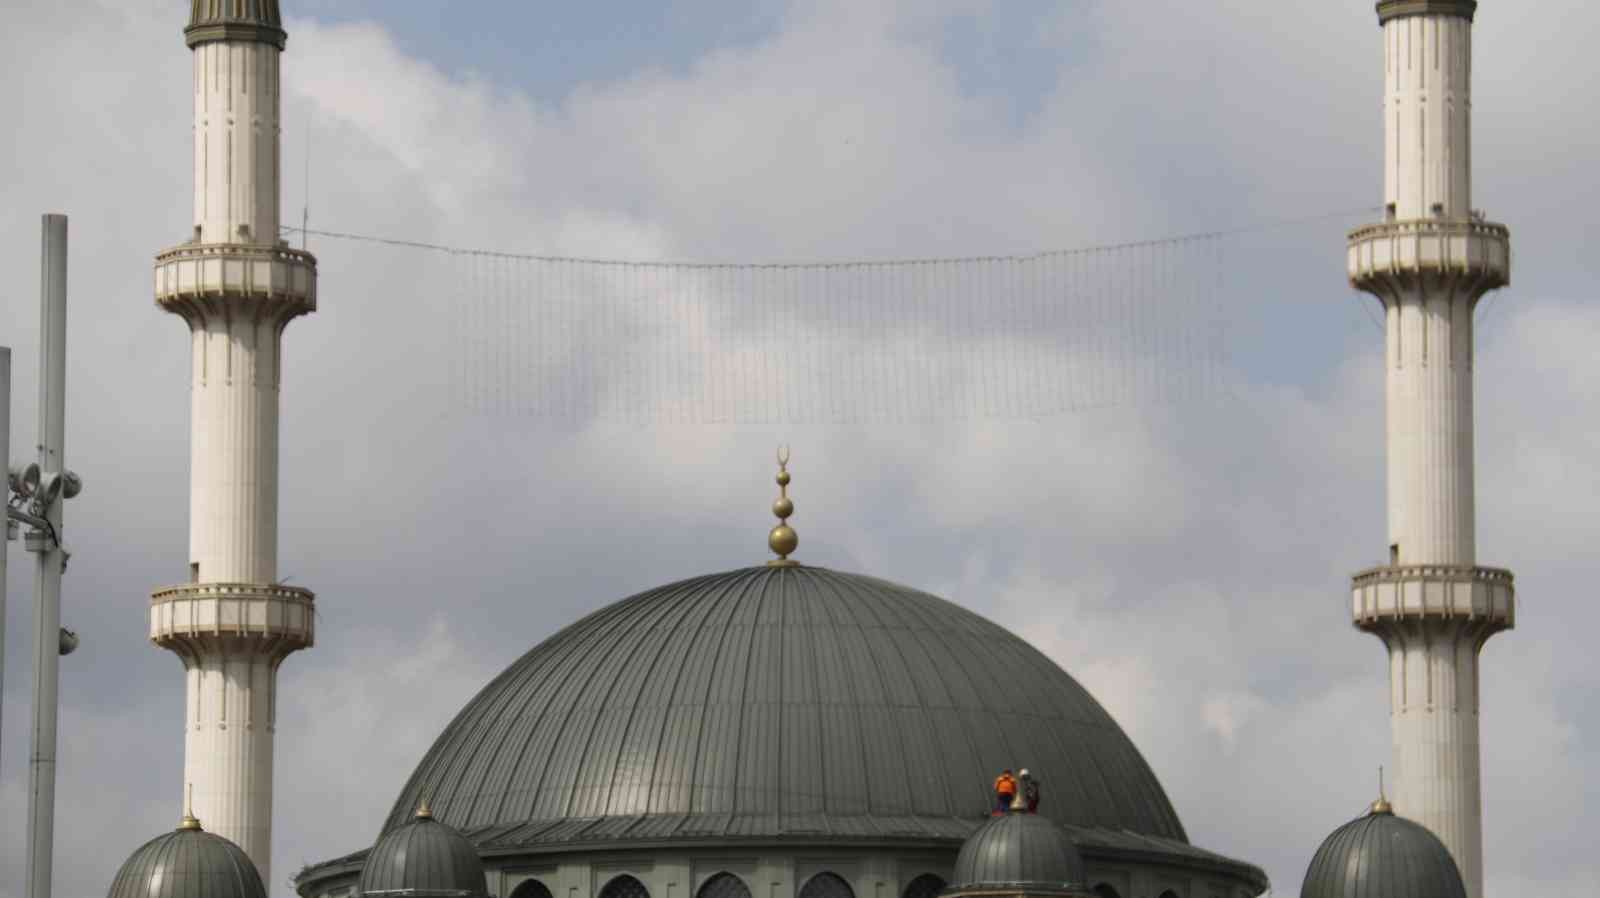 Osmanlı mirası mahyalar Ramazan ayı öncesi hazırlanarak camilere asılmaya başlandı. Süleymaniye Camii’ne son mahya ustalarından Kahraman Yıldız ...